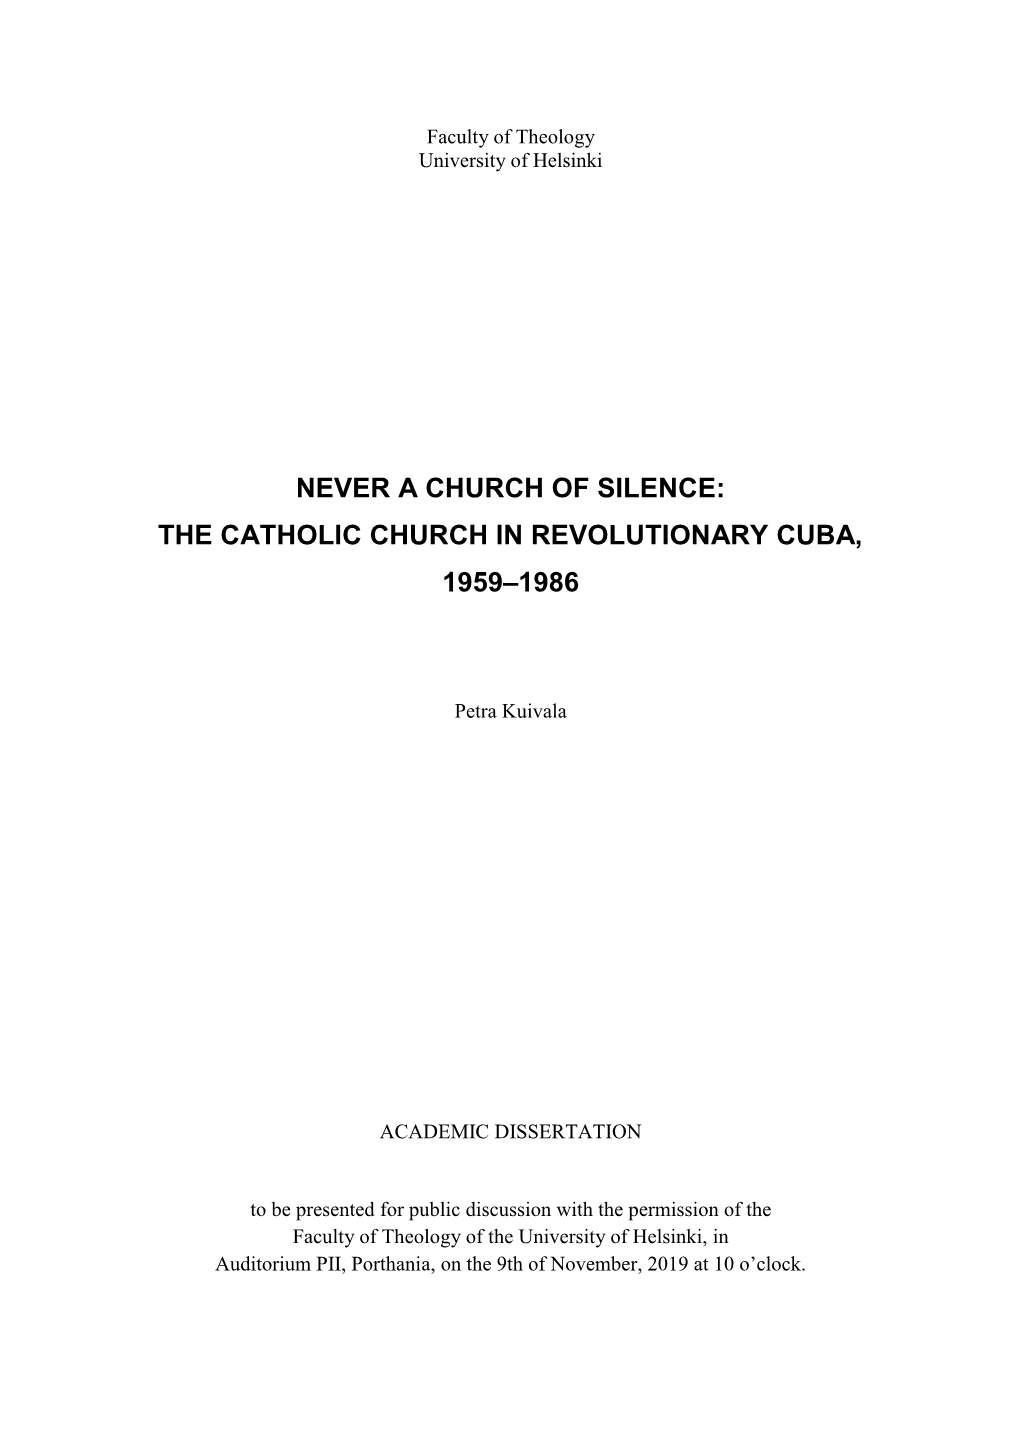 Never a Church of Silence: the Catholic Church in Revolutionary Cuba, 1959–1986